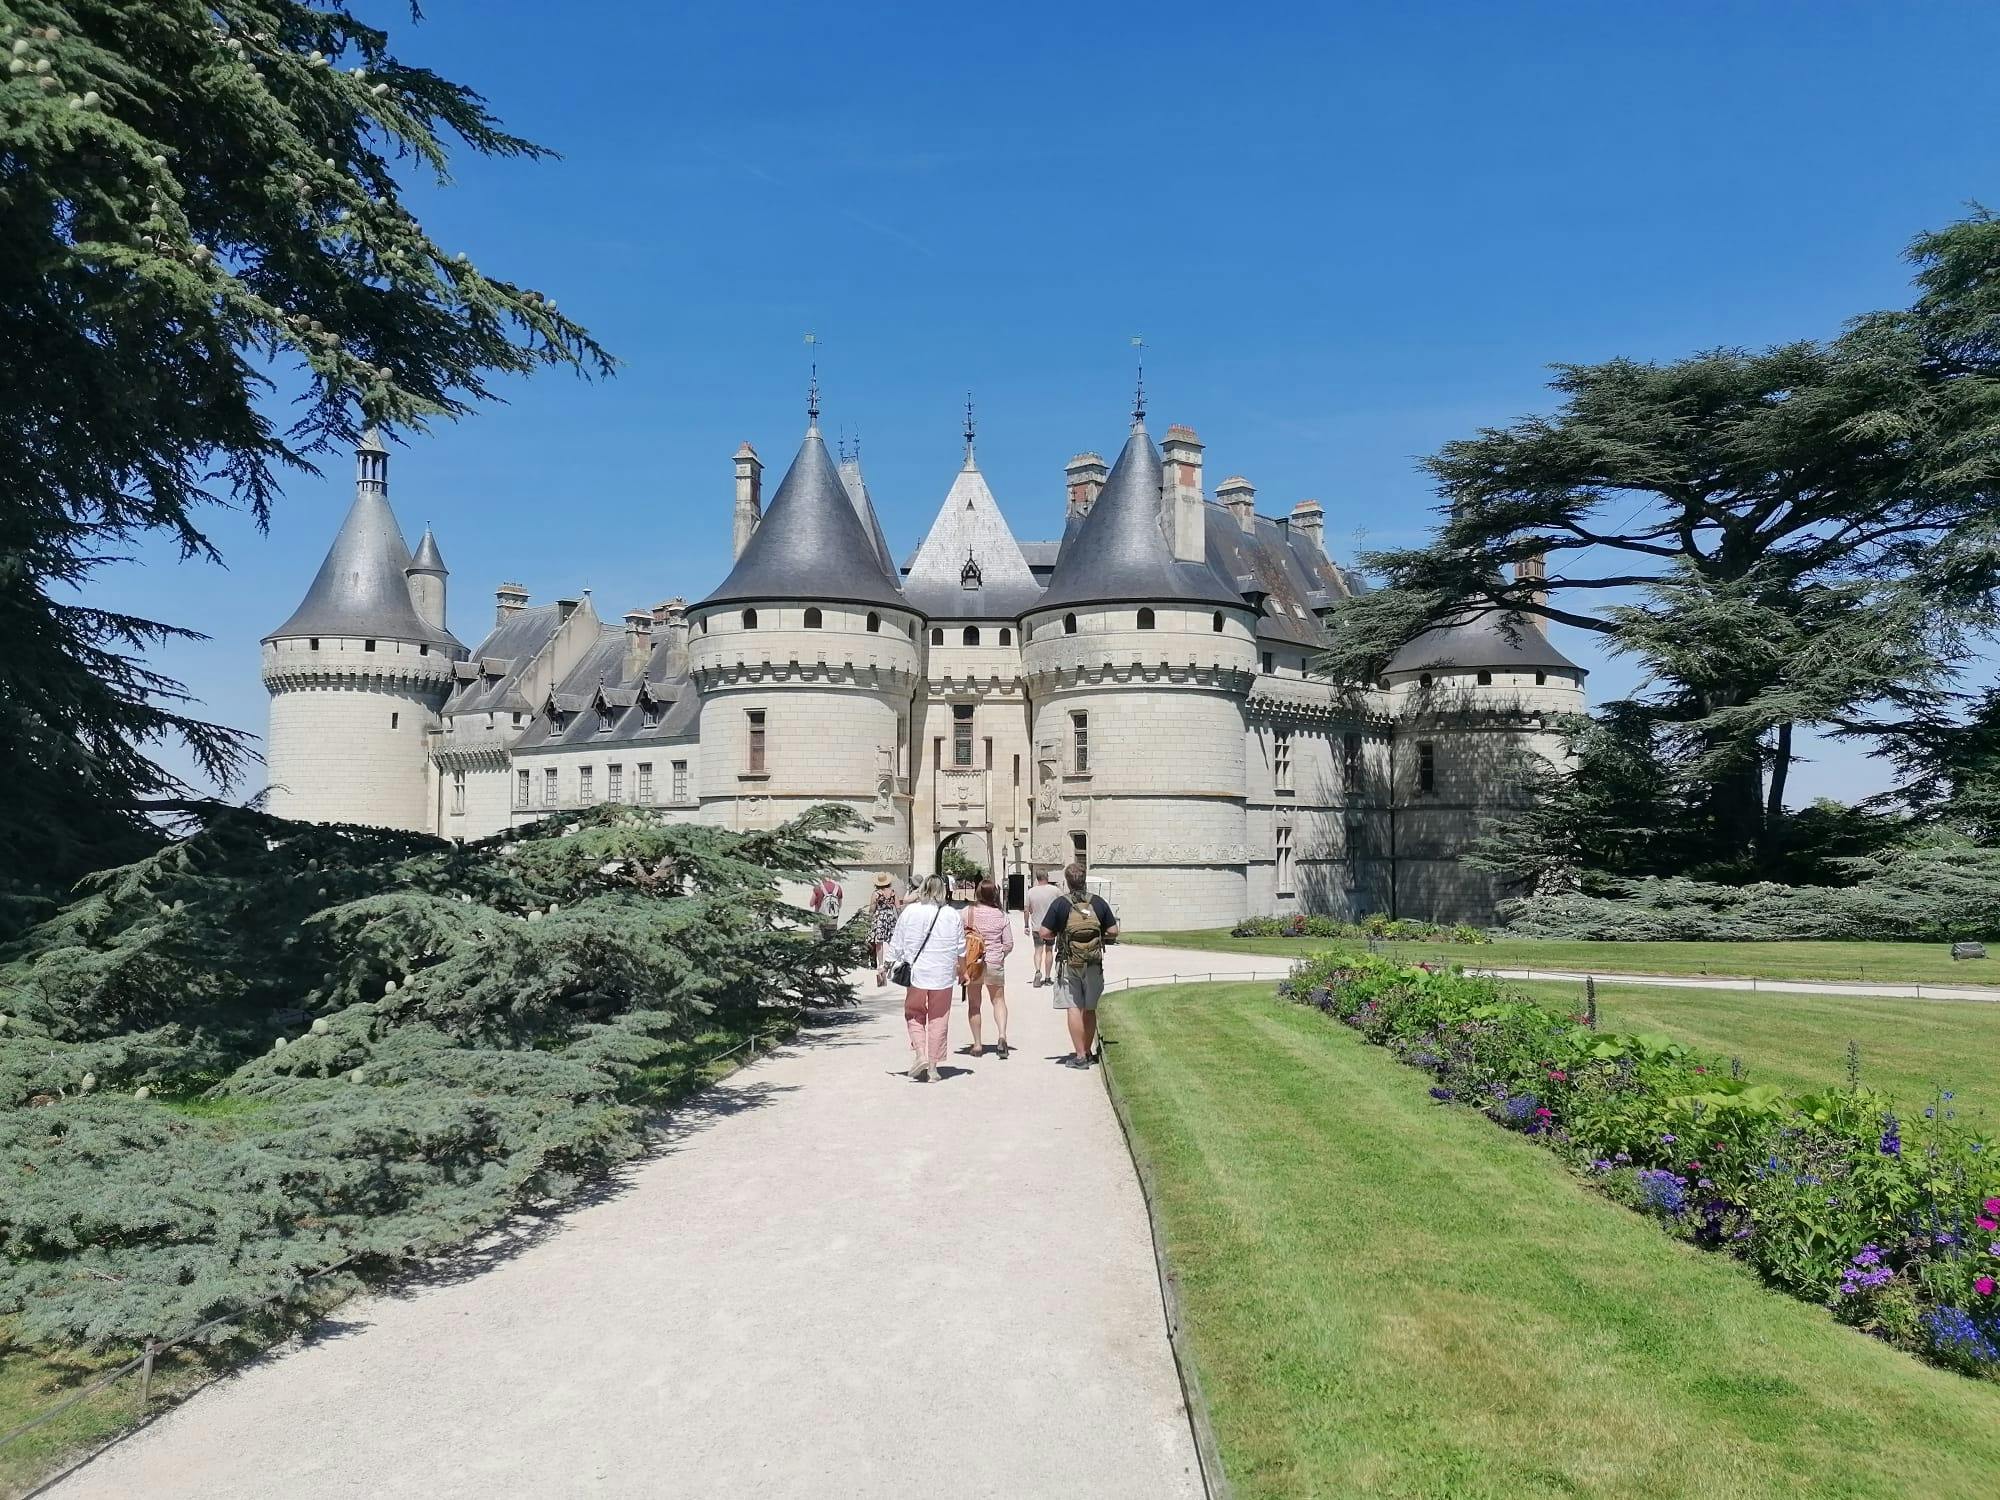 Radtour durch das Loiretal mit Besuch des Schlosses Chaumont-sur-Loire